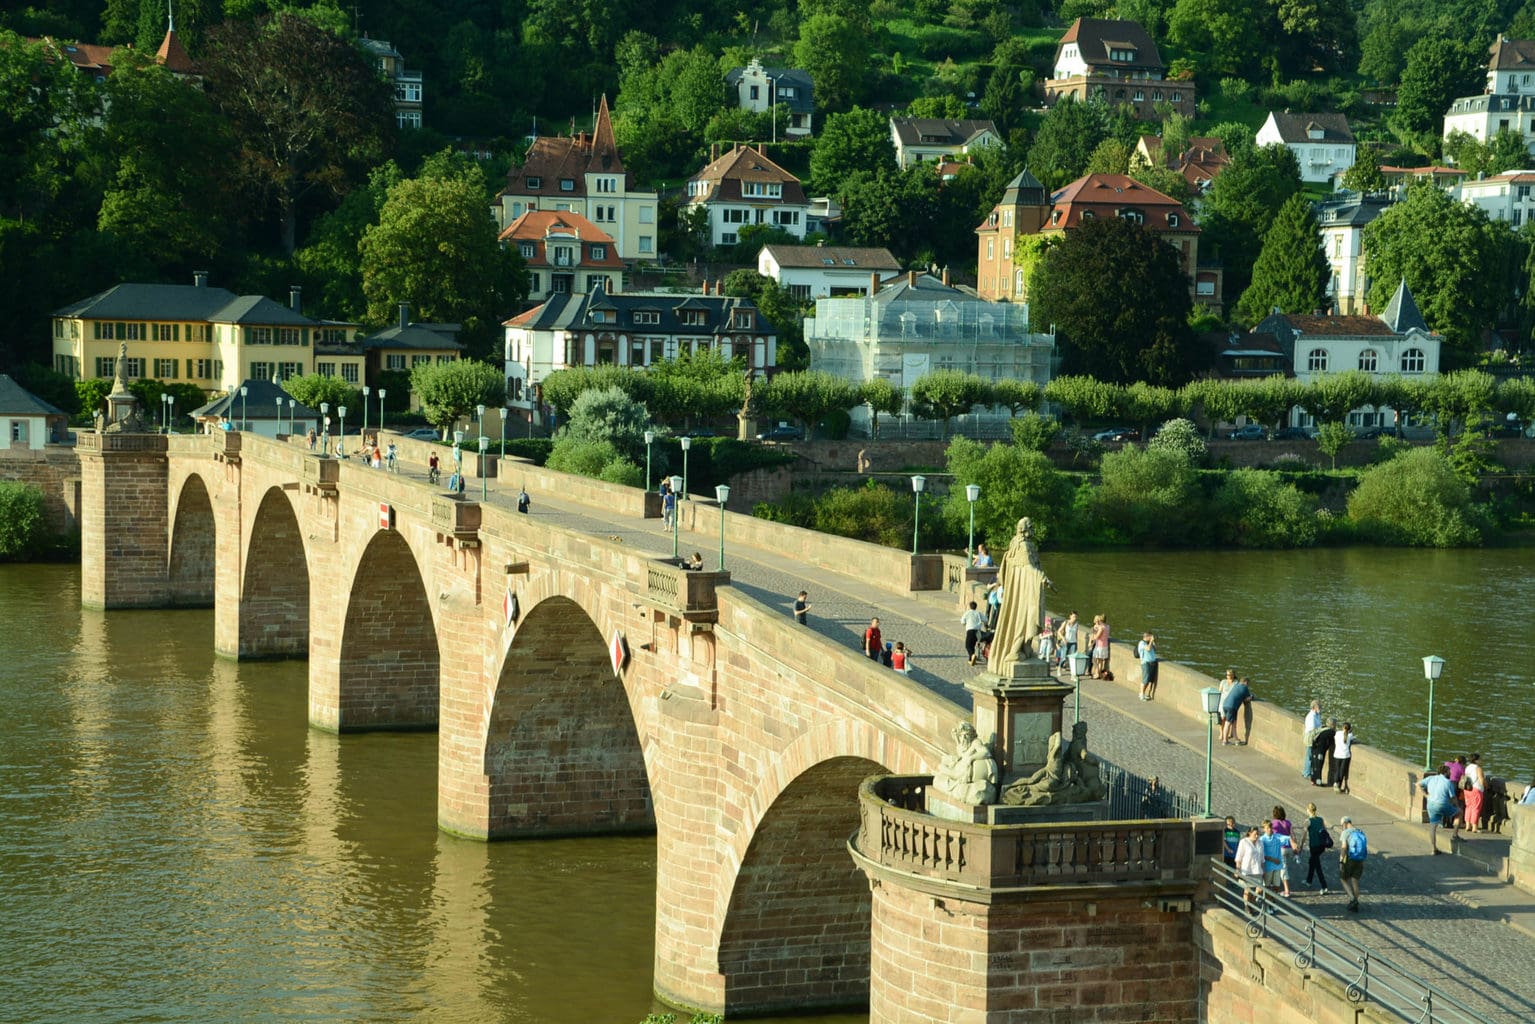 De rivier Neckar met een brug in de stad Heidelberg